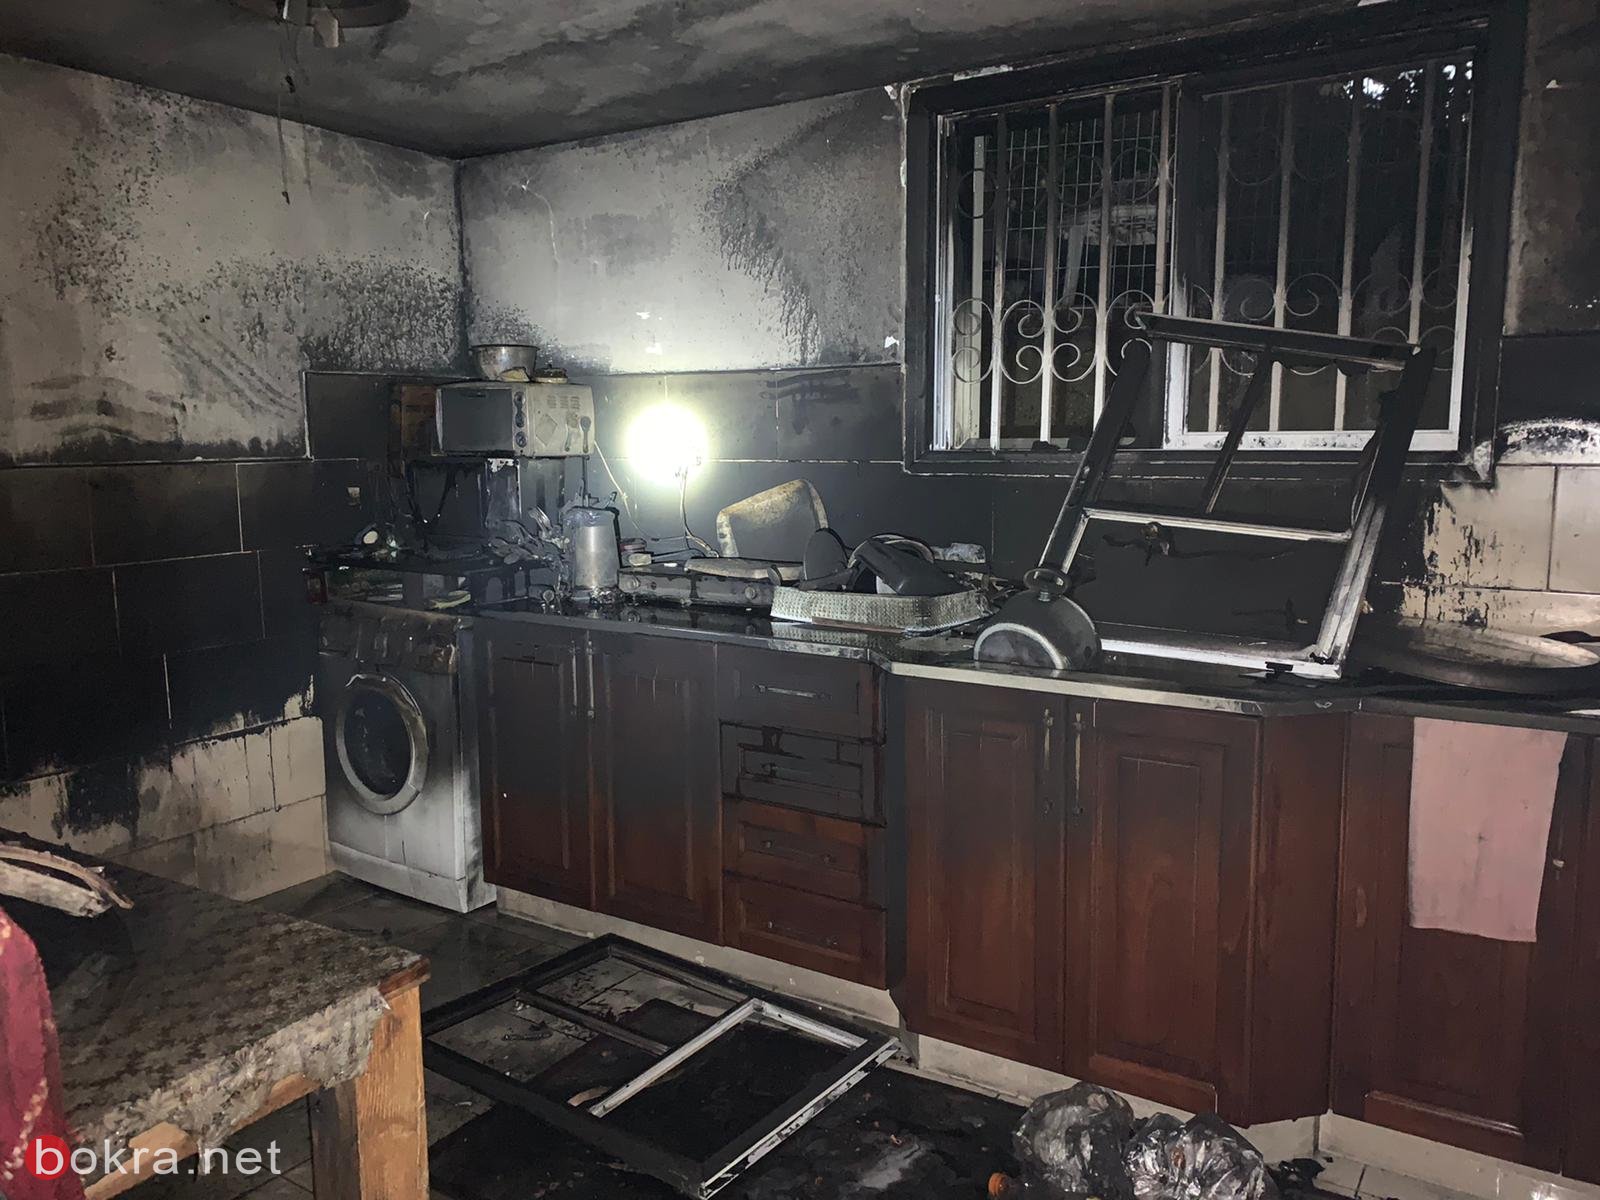 كفر قرع: اصابة سيدة جراء اندلاع حريق في مطبخ المنزل-2